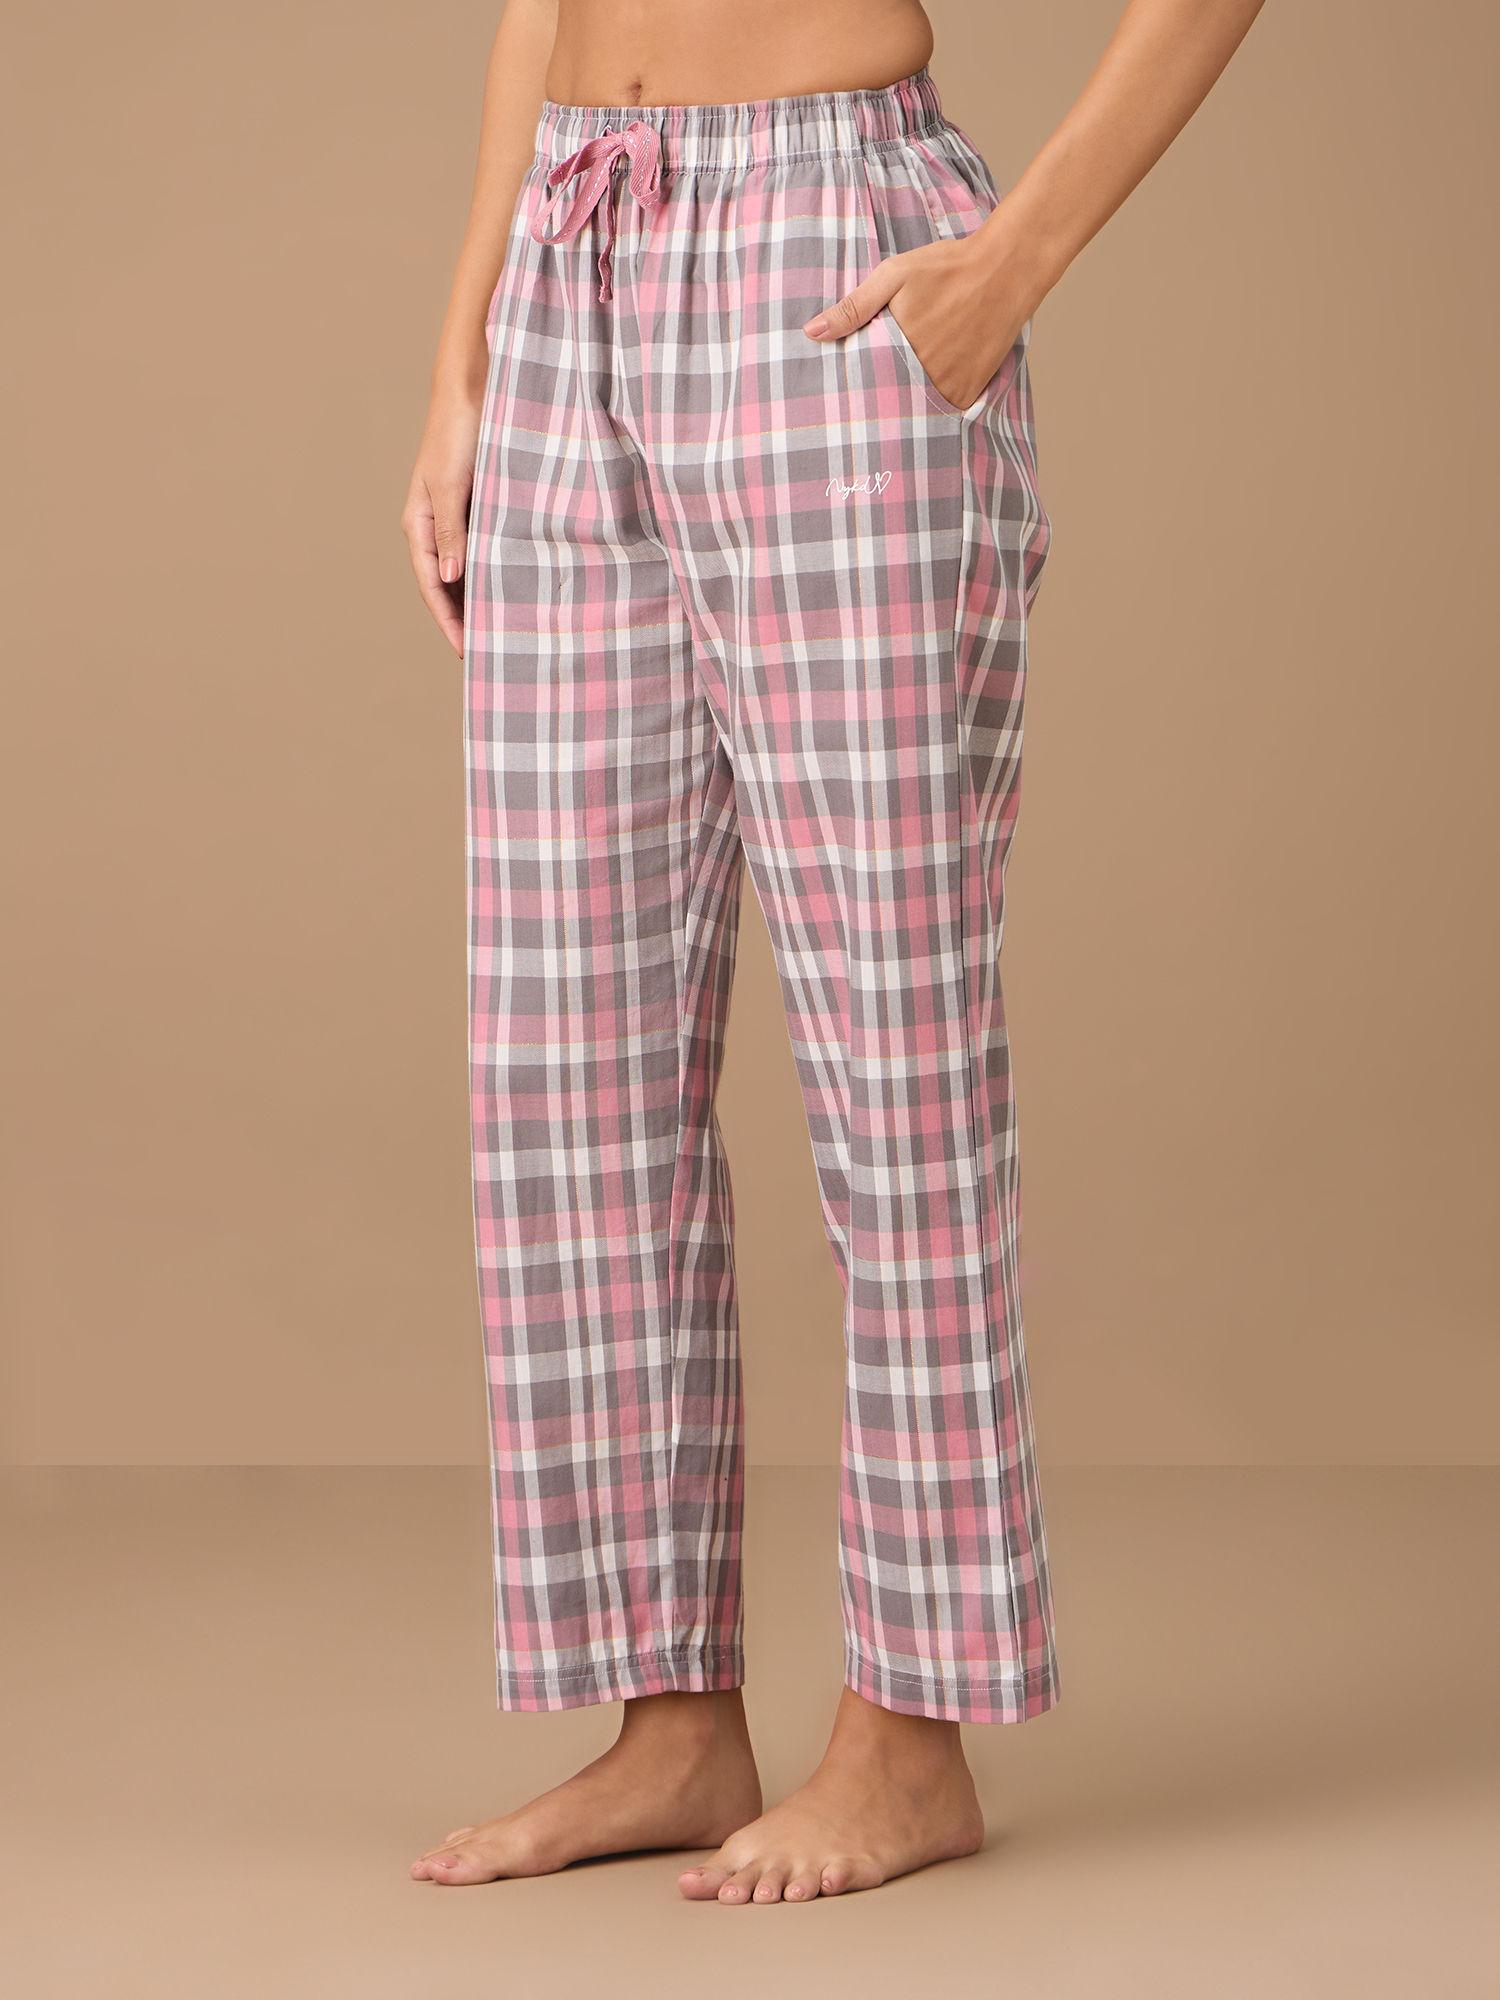 cotton plaid pajama - nys141 - grey pink plaid